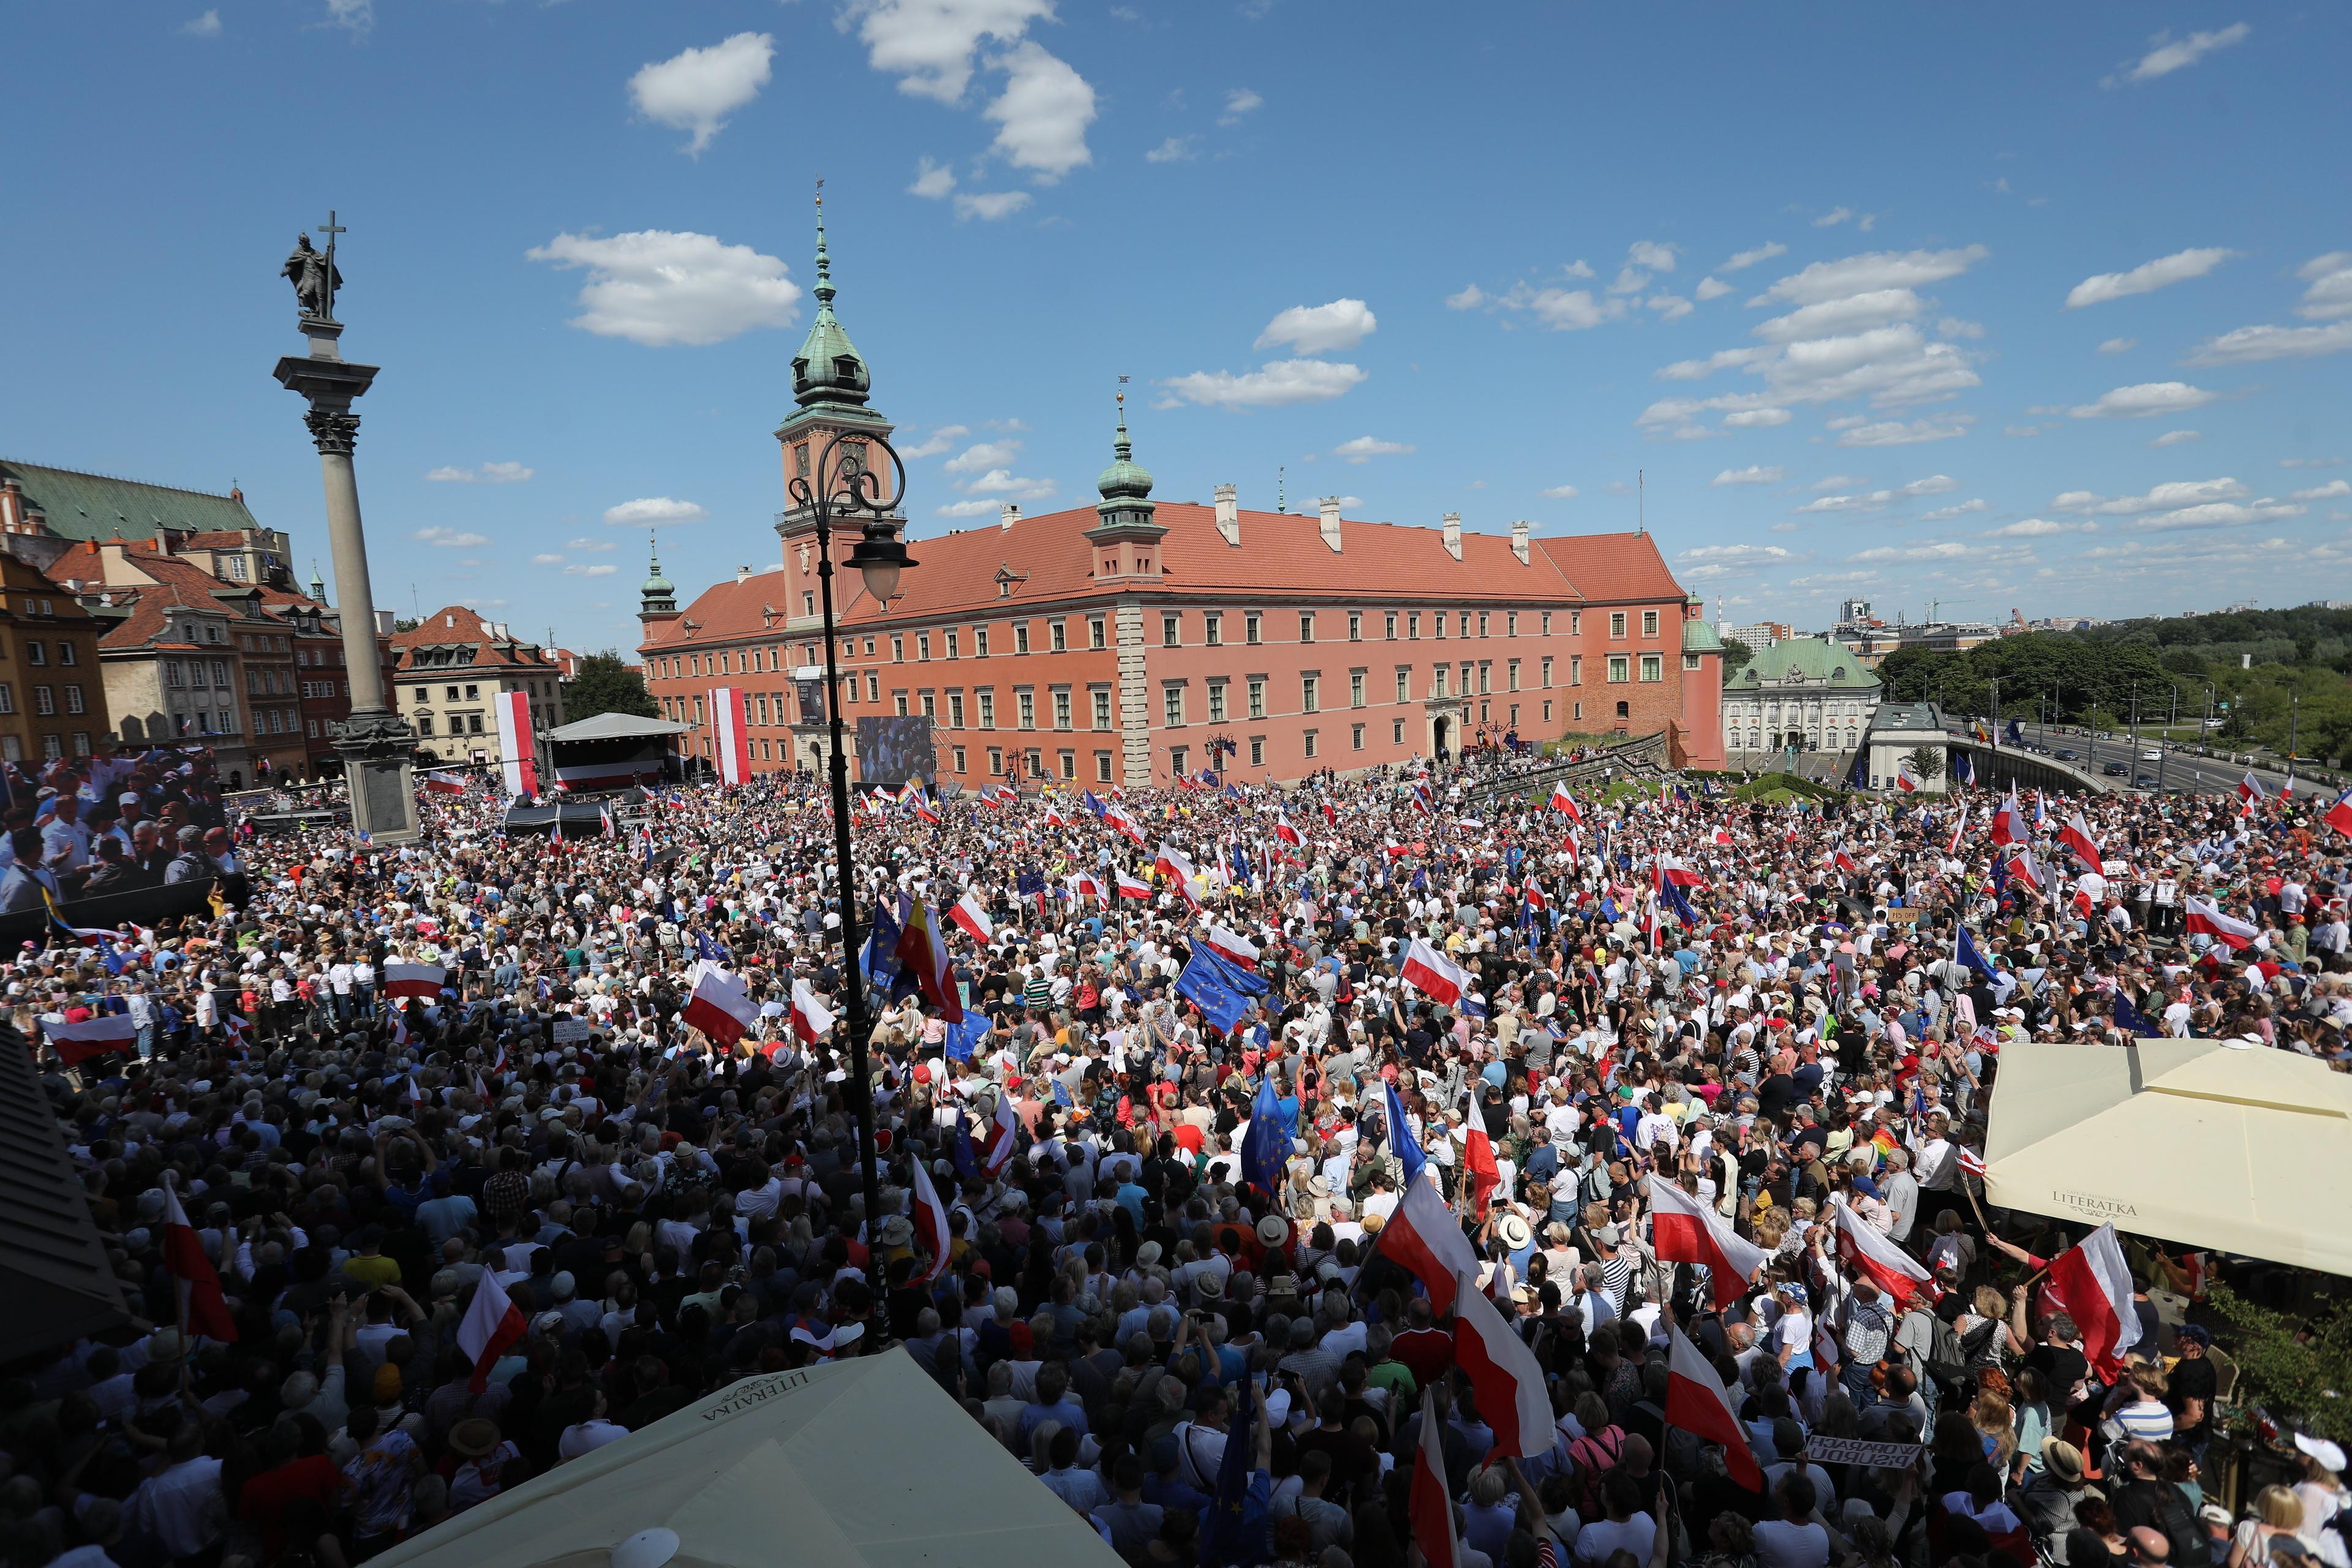 Plac zamkowy w Warszawie szczelnie wypełniony ludźmi